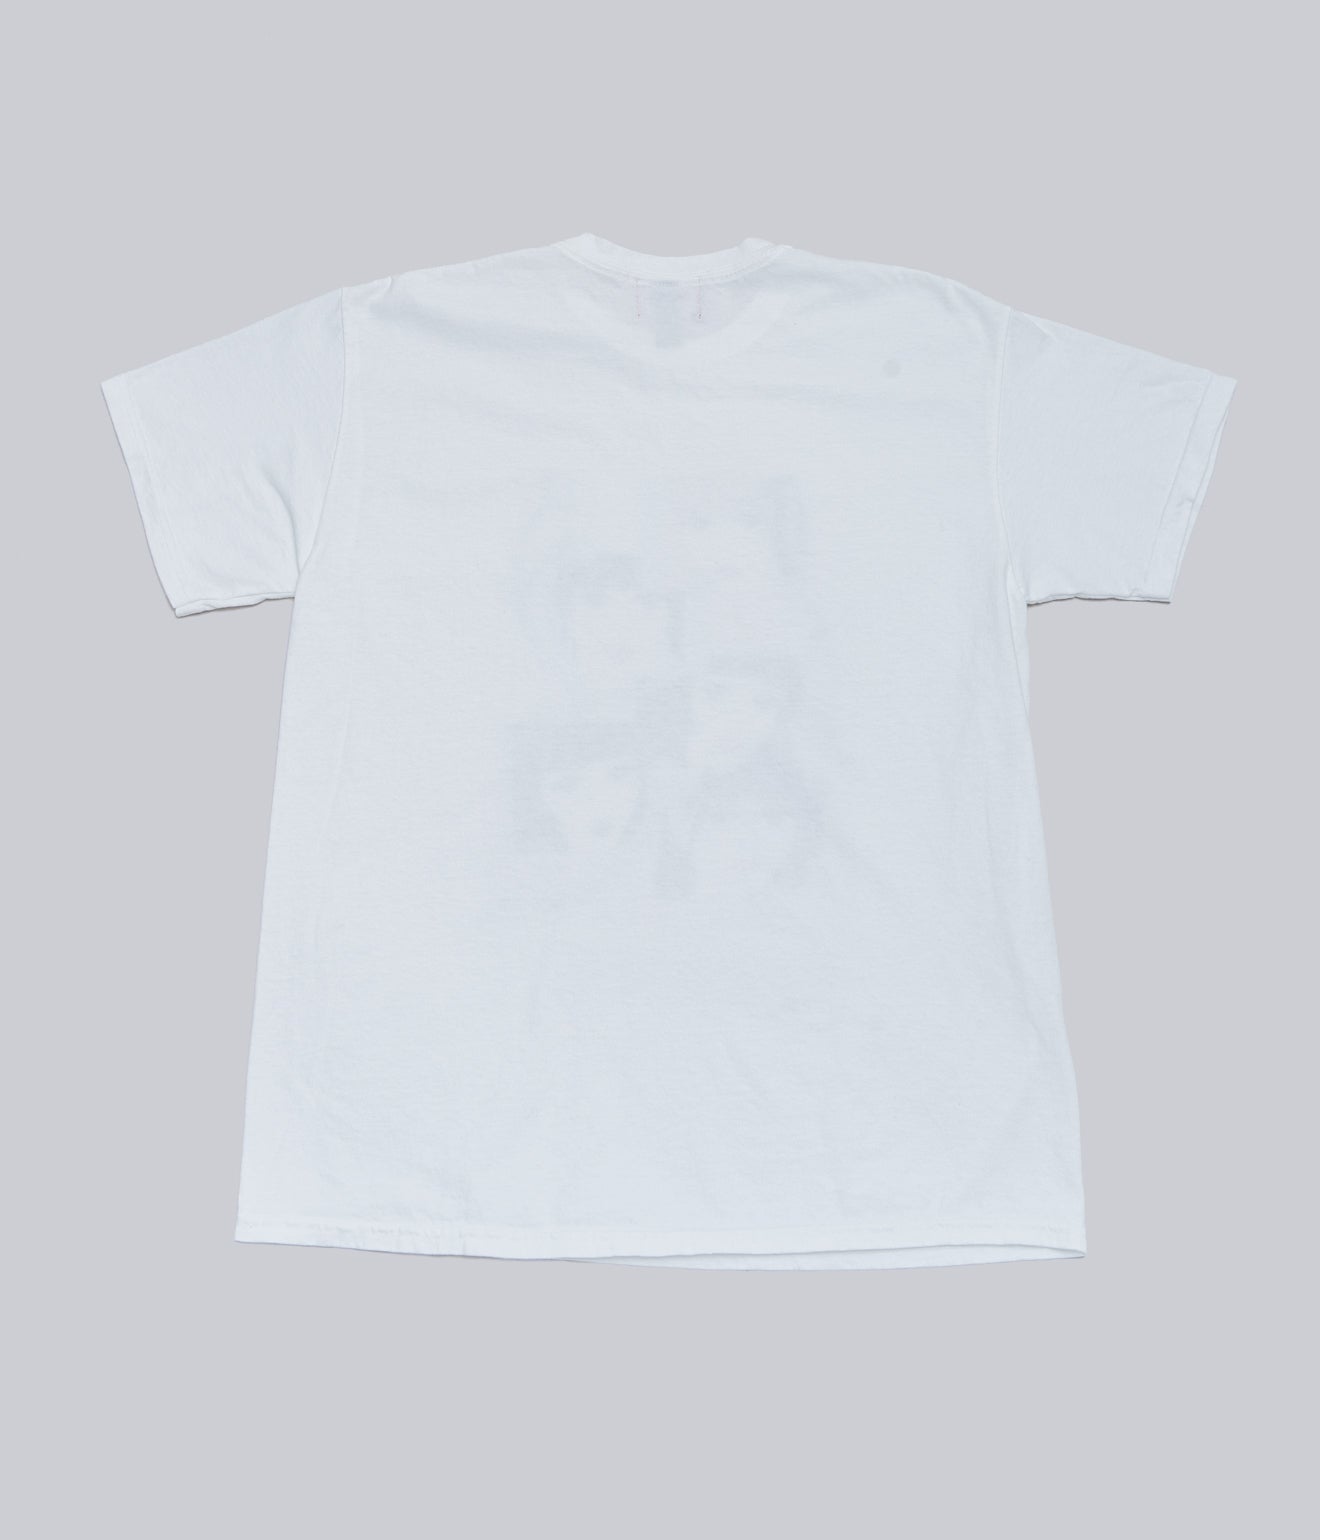 RAY × WEAREALLANIMALS × Momoko Nakamura "Bud" T-shirt Color Print - WEAREALLANIMALS